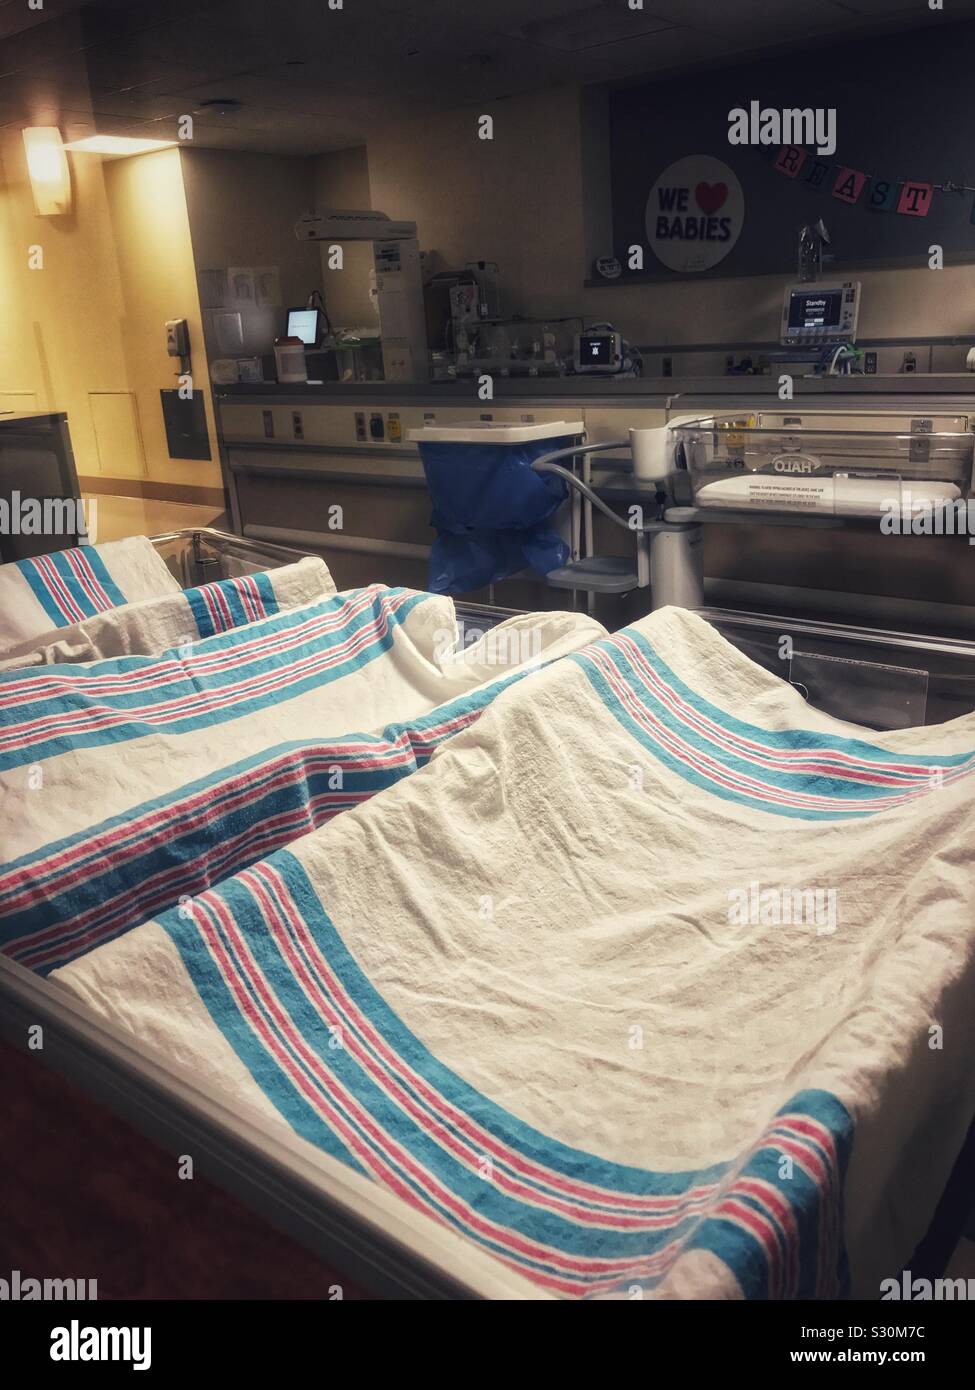 Auto-kindersitze mit Decken, für Babys hinter dem Sichtfenster im Krankenhaus Kindergarten bereit Stockfoto